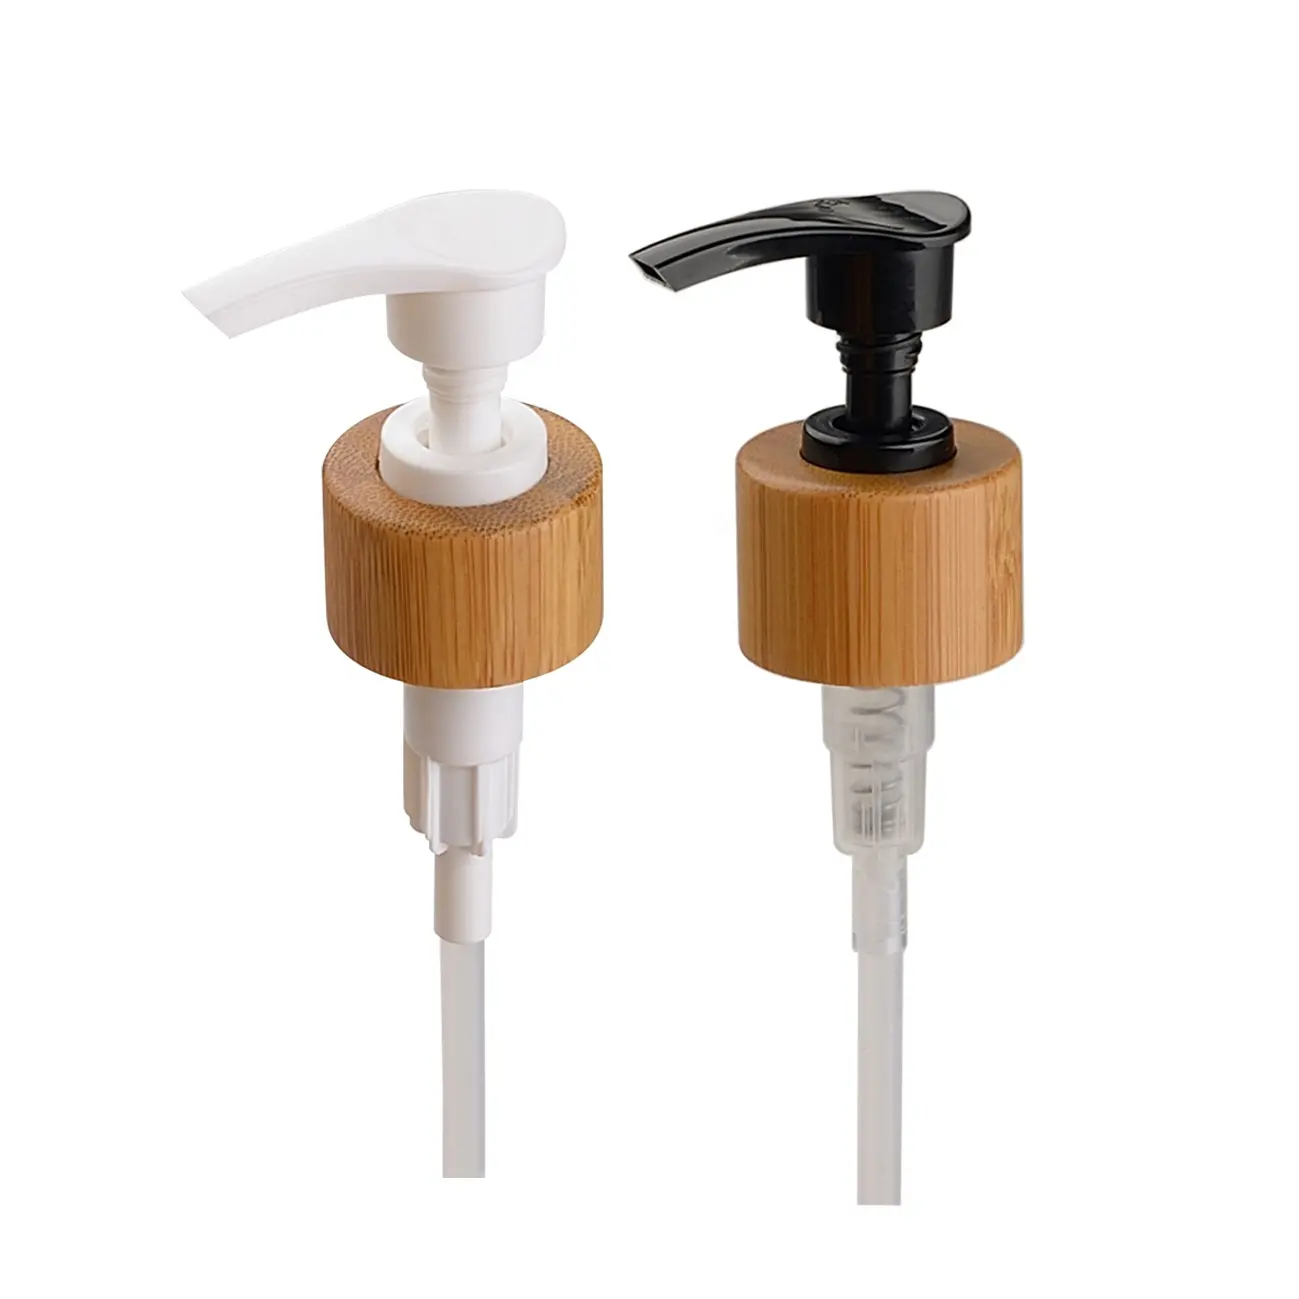 Pompa a mano in plastica di bambù 24/410 pompa per bottiglie lavatrici a mano da 24mm pompa dispenser per shampoo e sapone